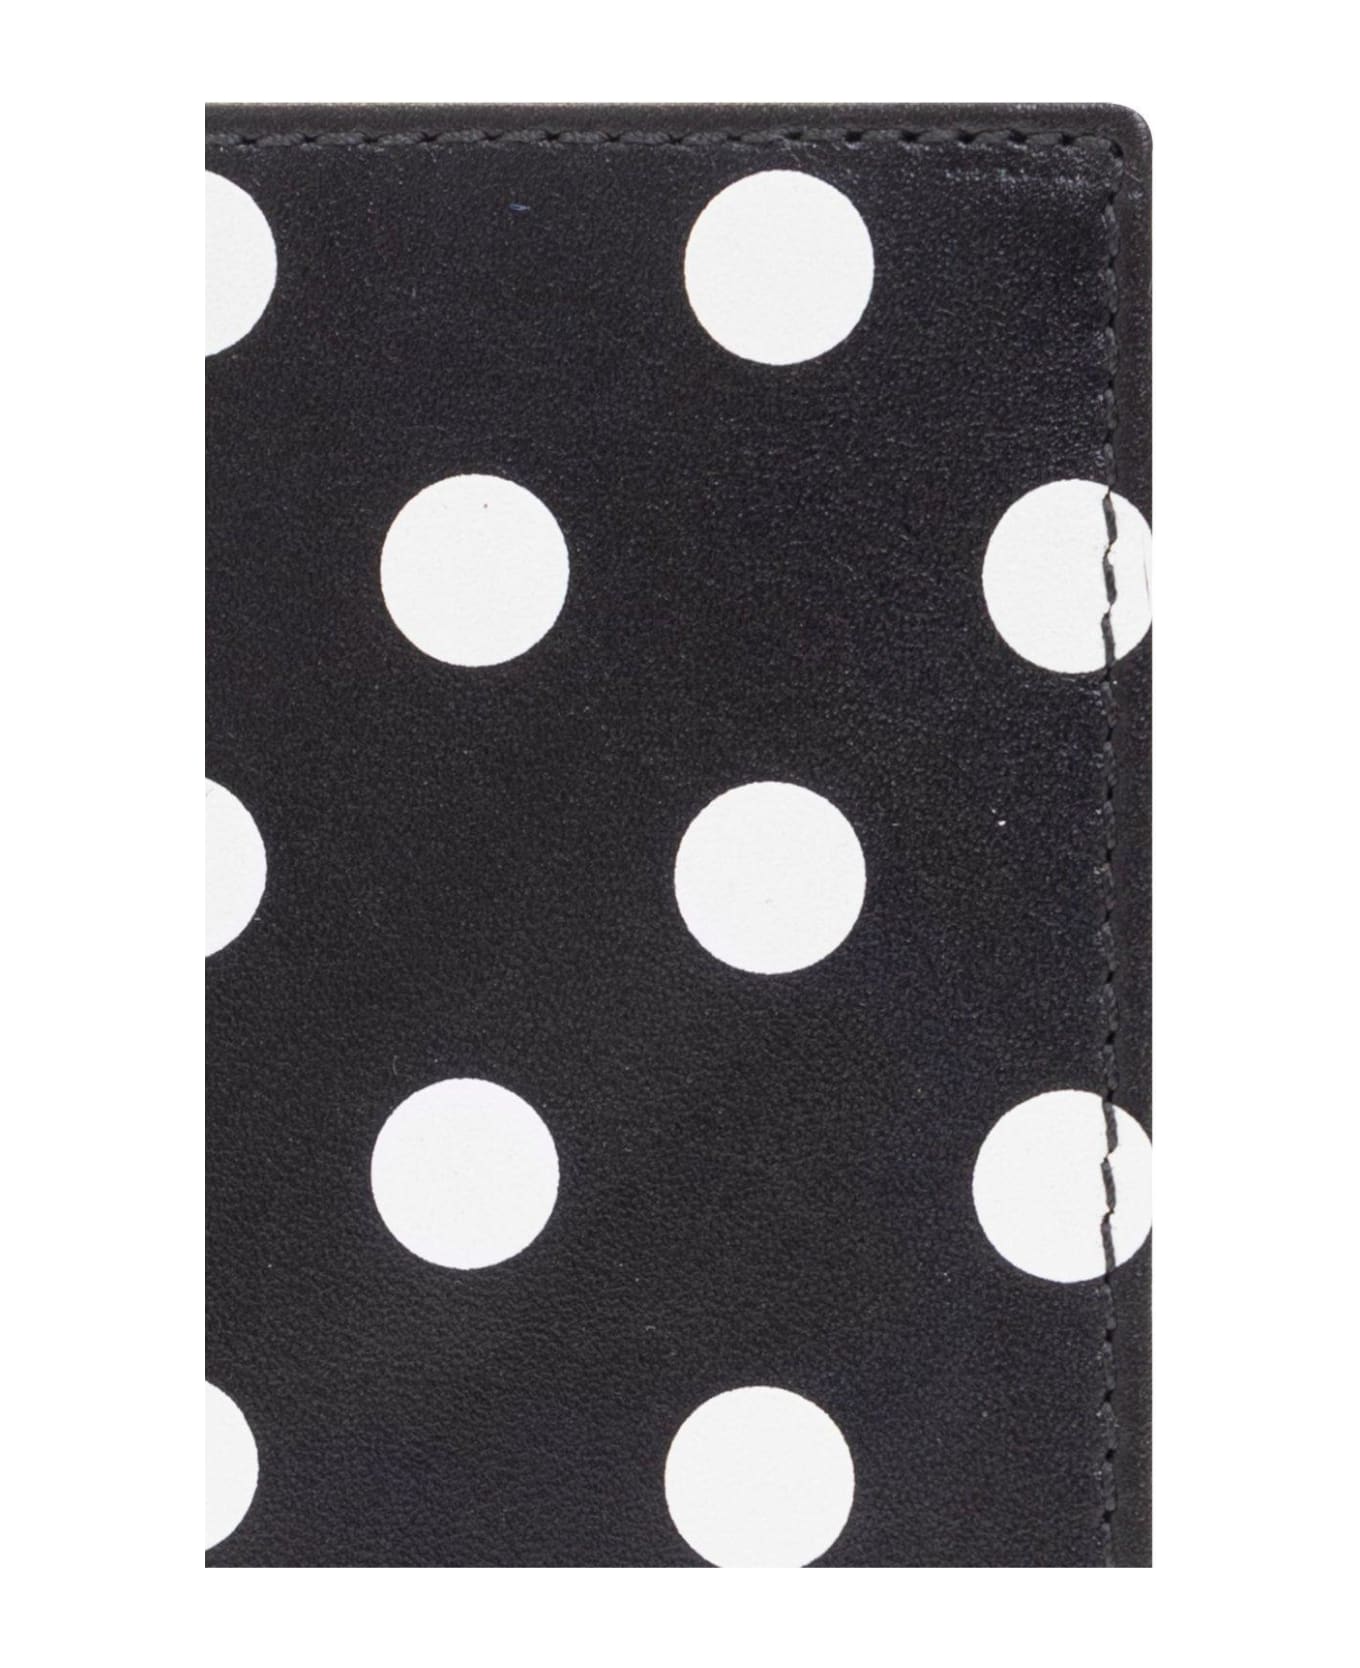 Comme des Garçons Wallet Polka Dot Printed Wallet - Blk Black